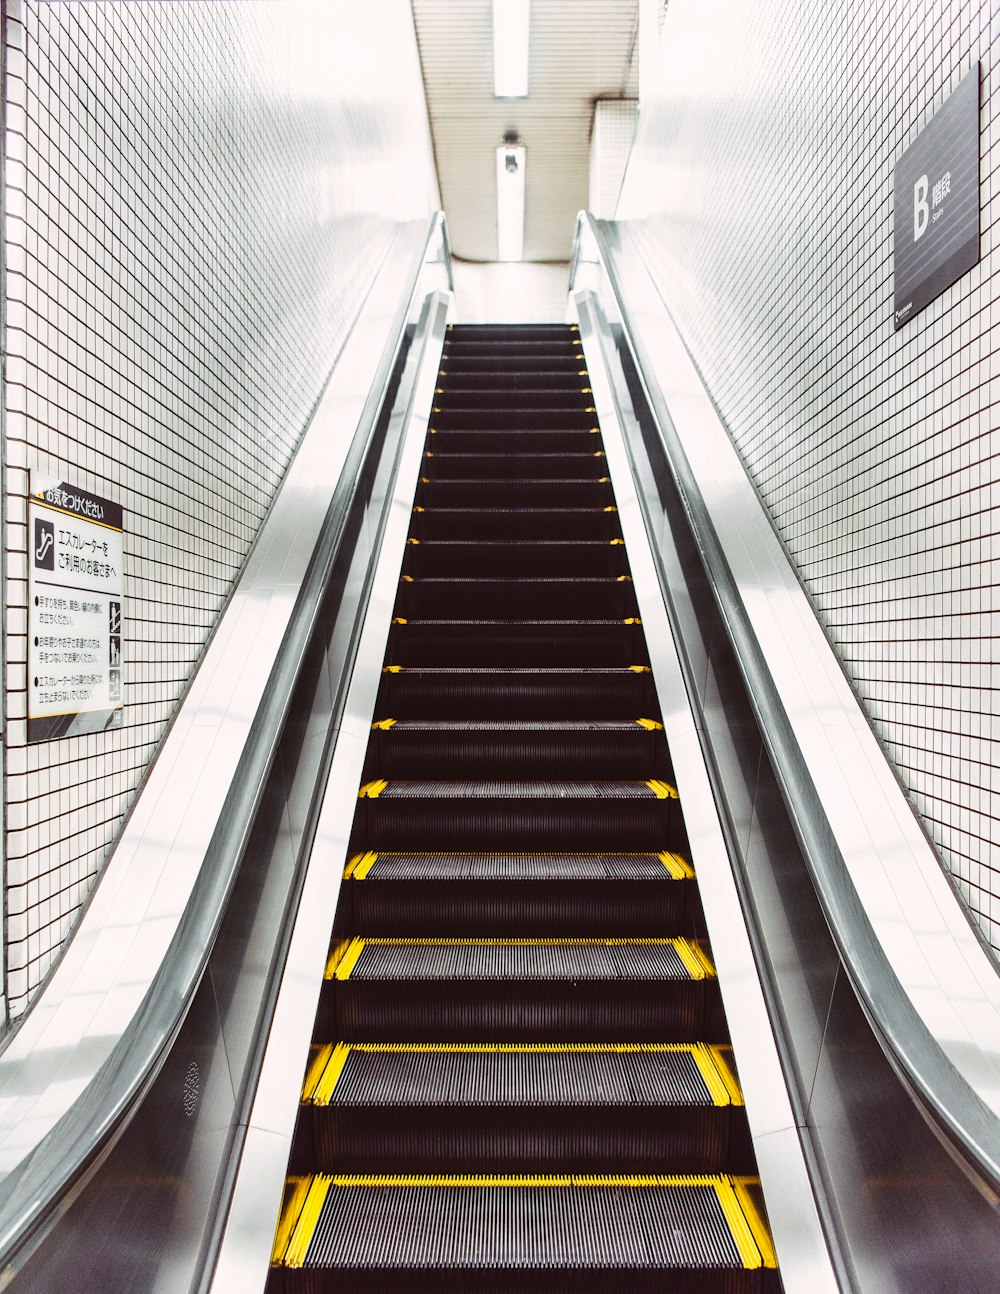 Escalera mecánica en blanco y negro sin gente